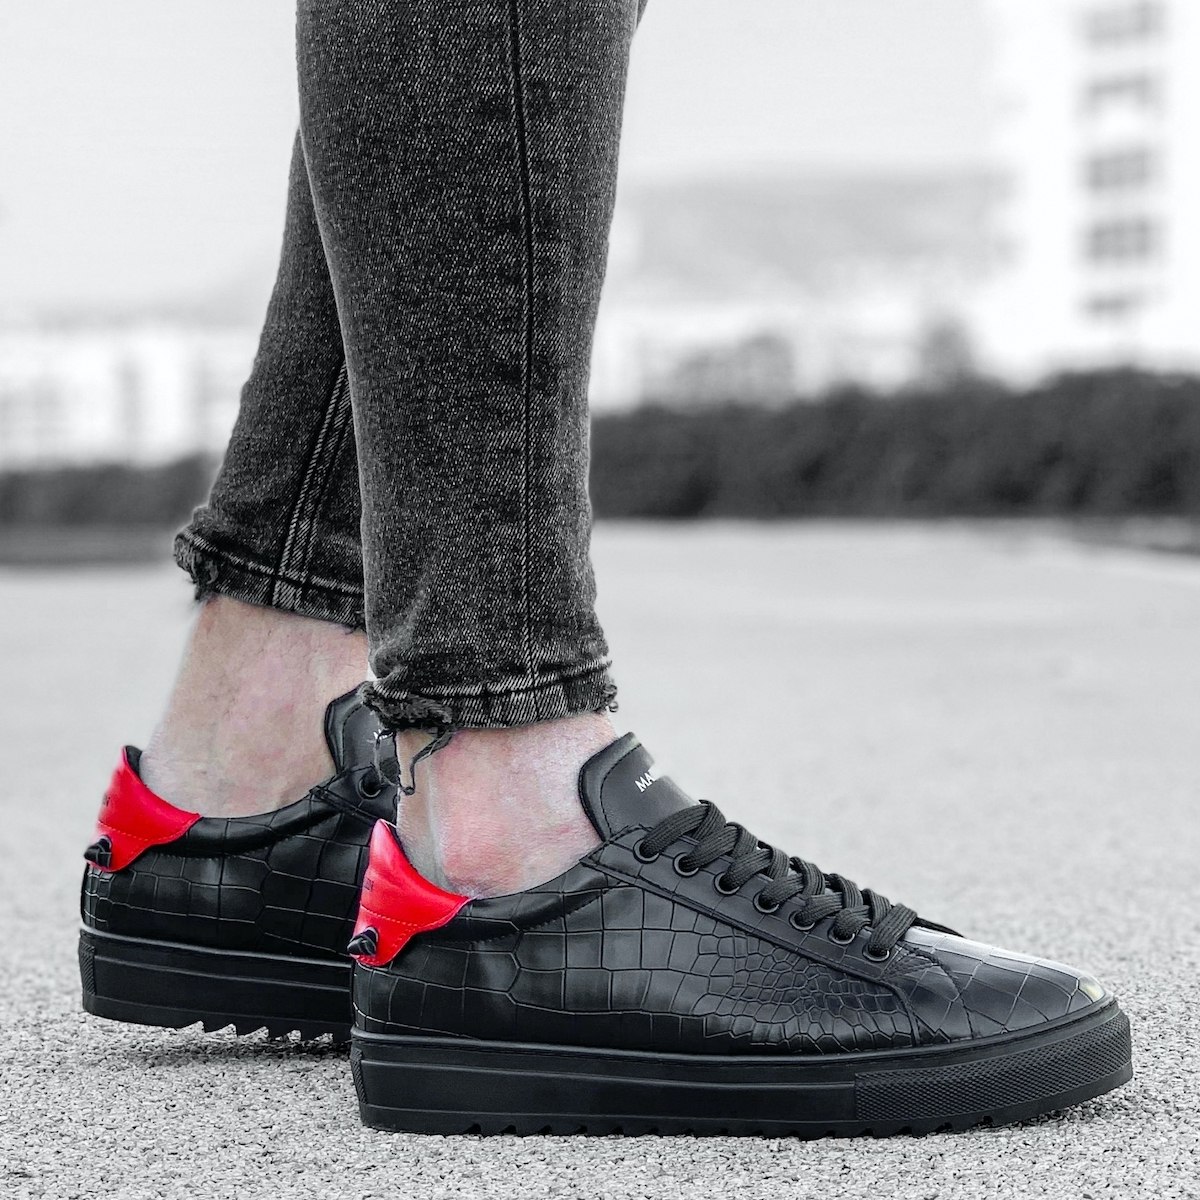 Herren Low Top Sneakers Schuhe mit Krokodilleder Optik in schwarz-rot | Martin Valen